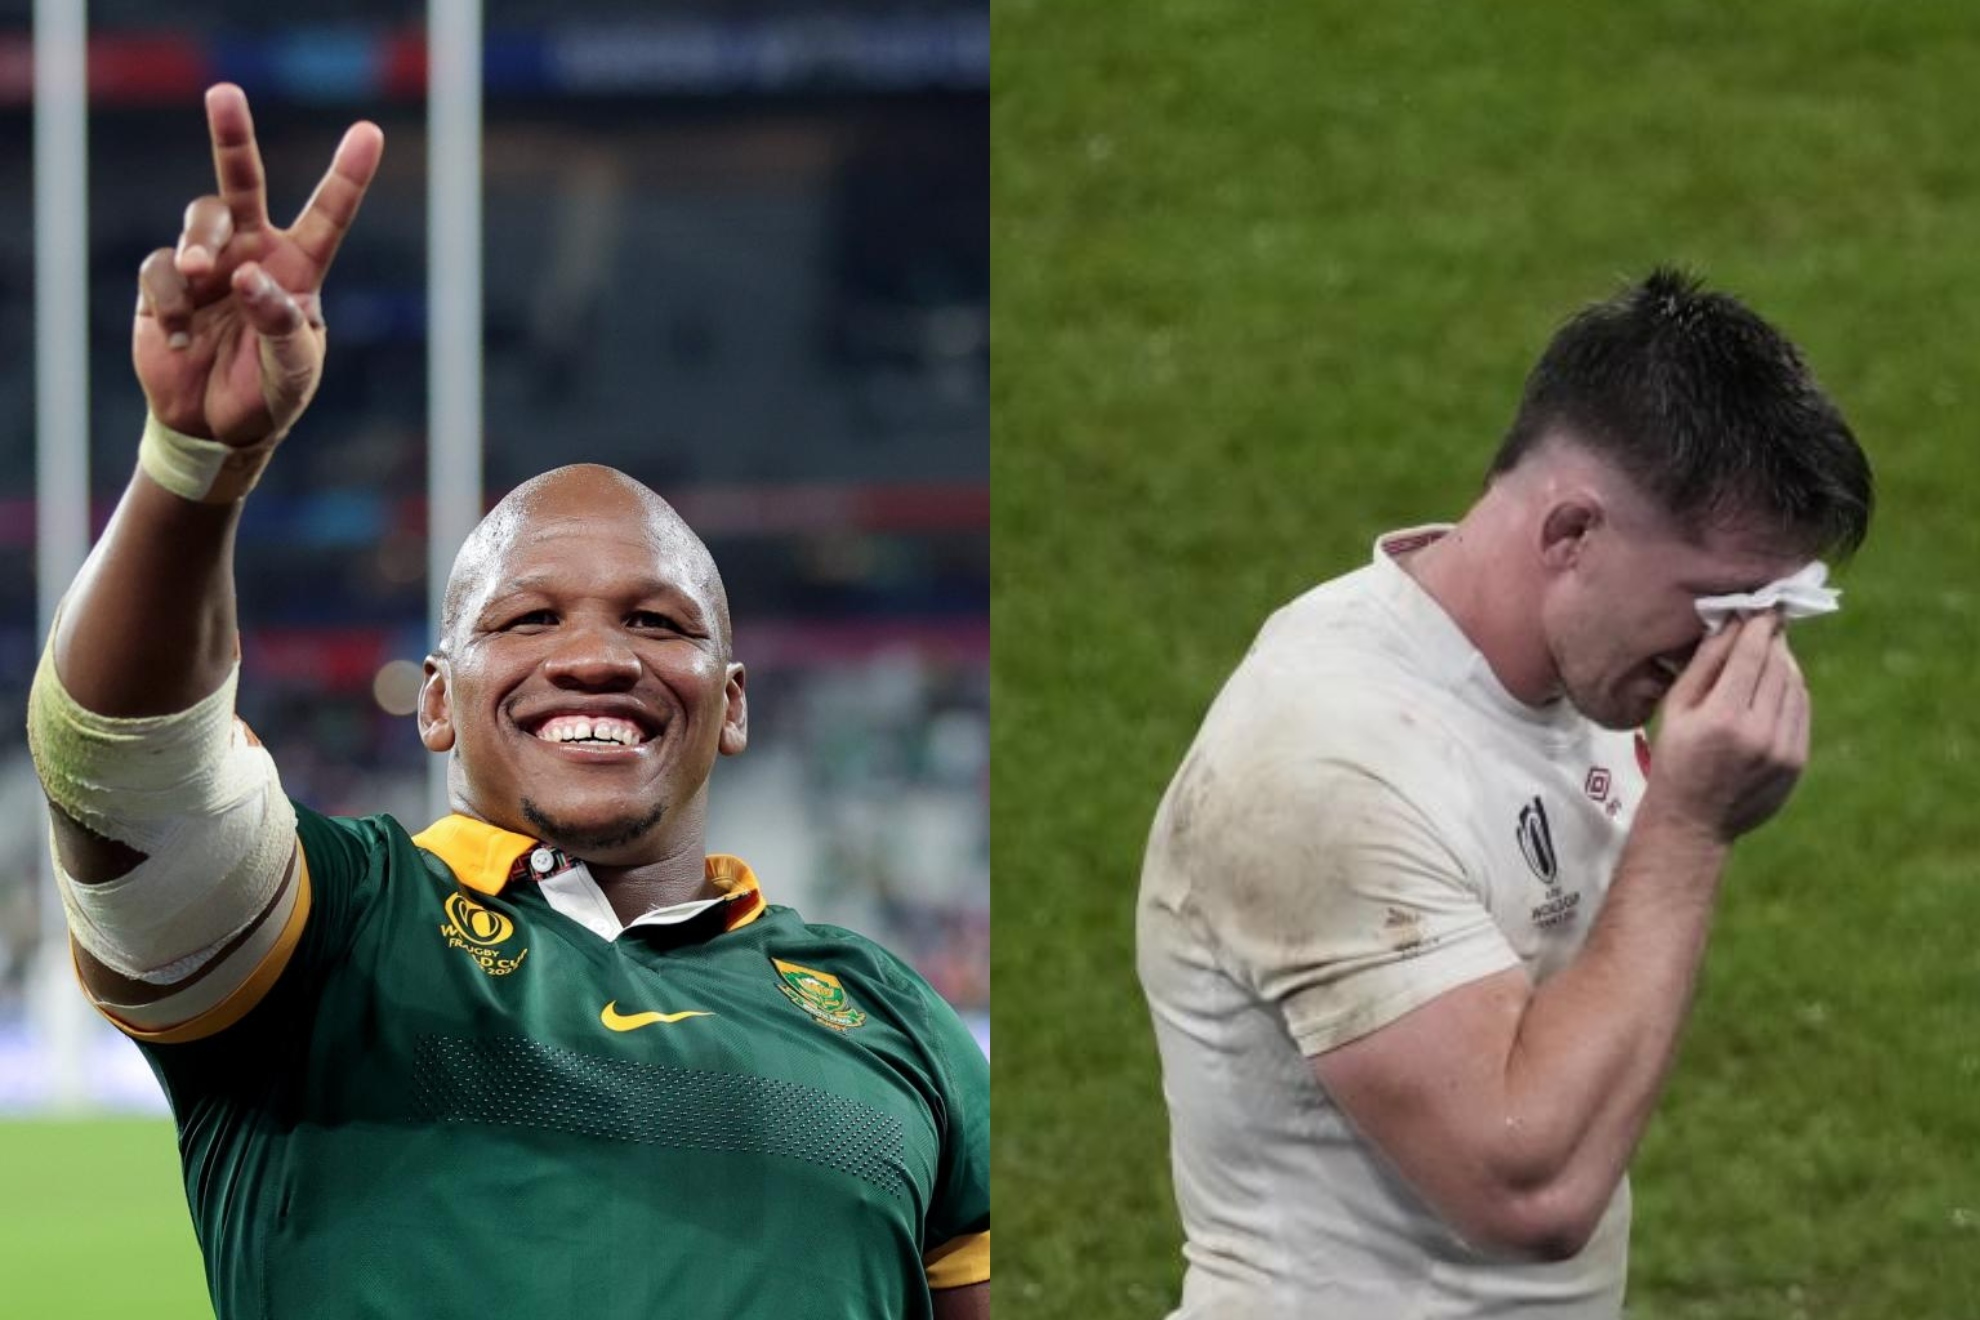 ¿Qué le dijo realmente Mbonambi a Curry? Sudáfrica alega mala traducción del afrikaans al inglés